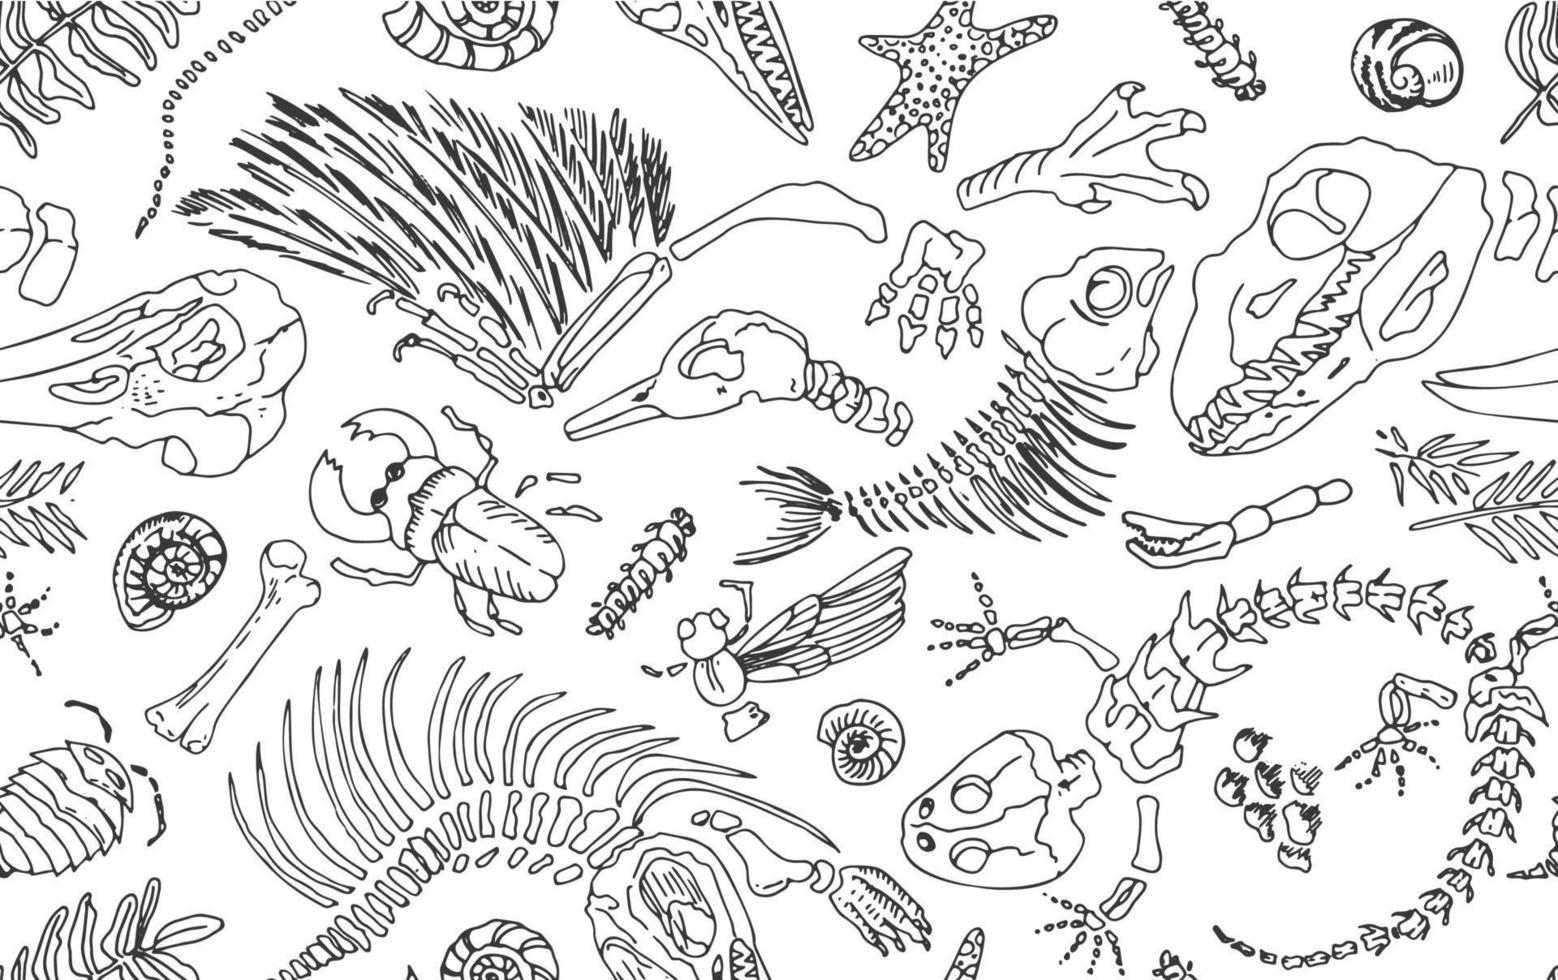 isolato nero linea contorno impronte scheletri di preistorico animali, insetti e impianti. senza soluzione di continuità modello realistico mano disegnato arte. vettore illustrazione